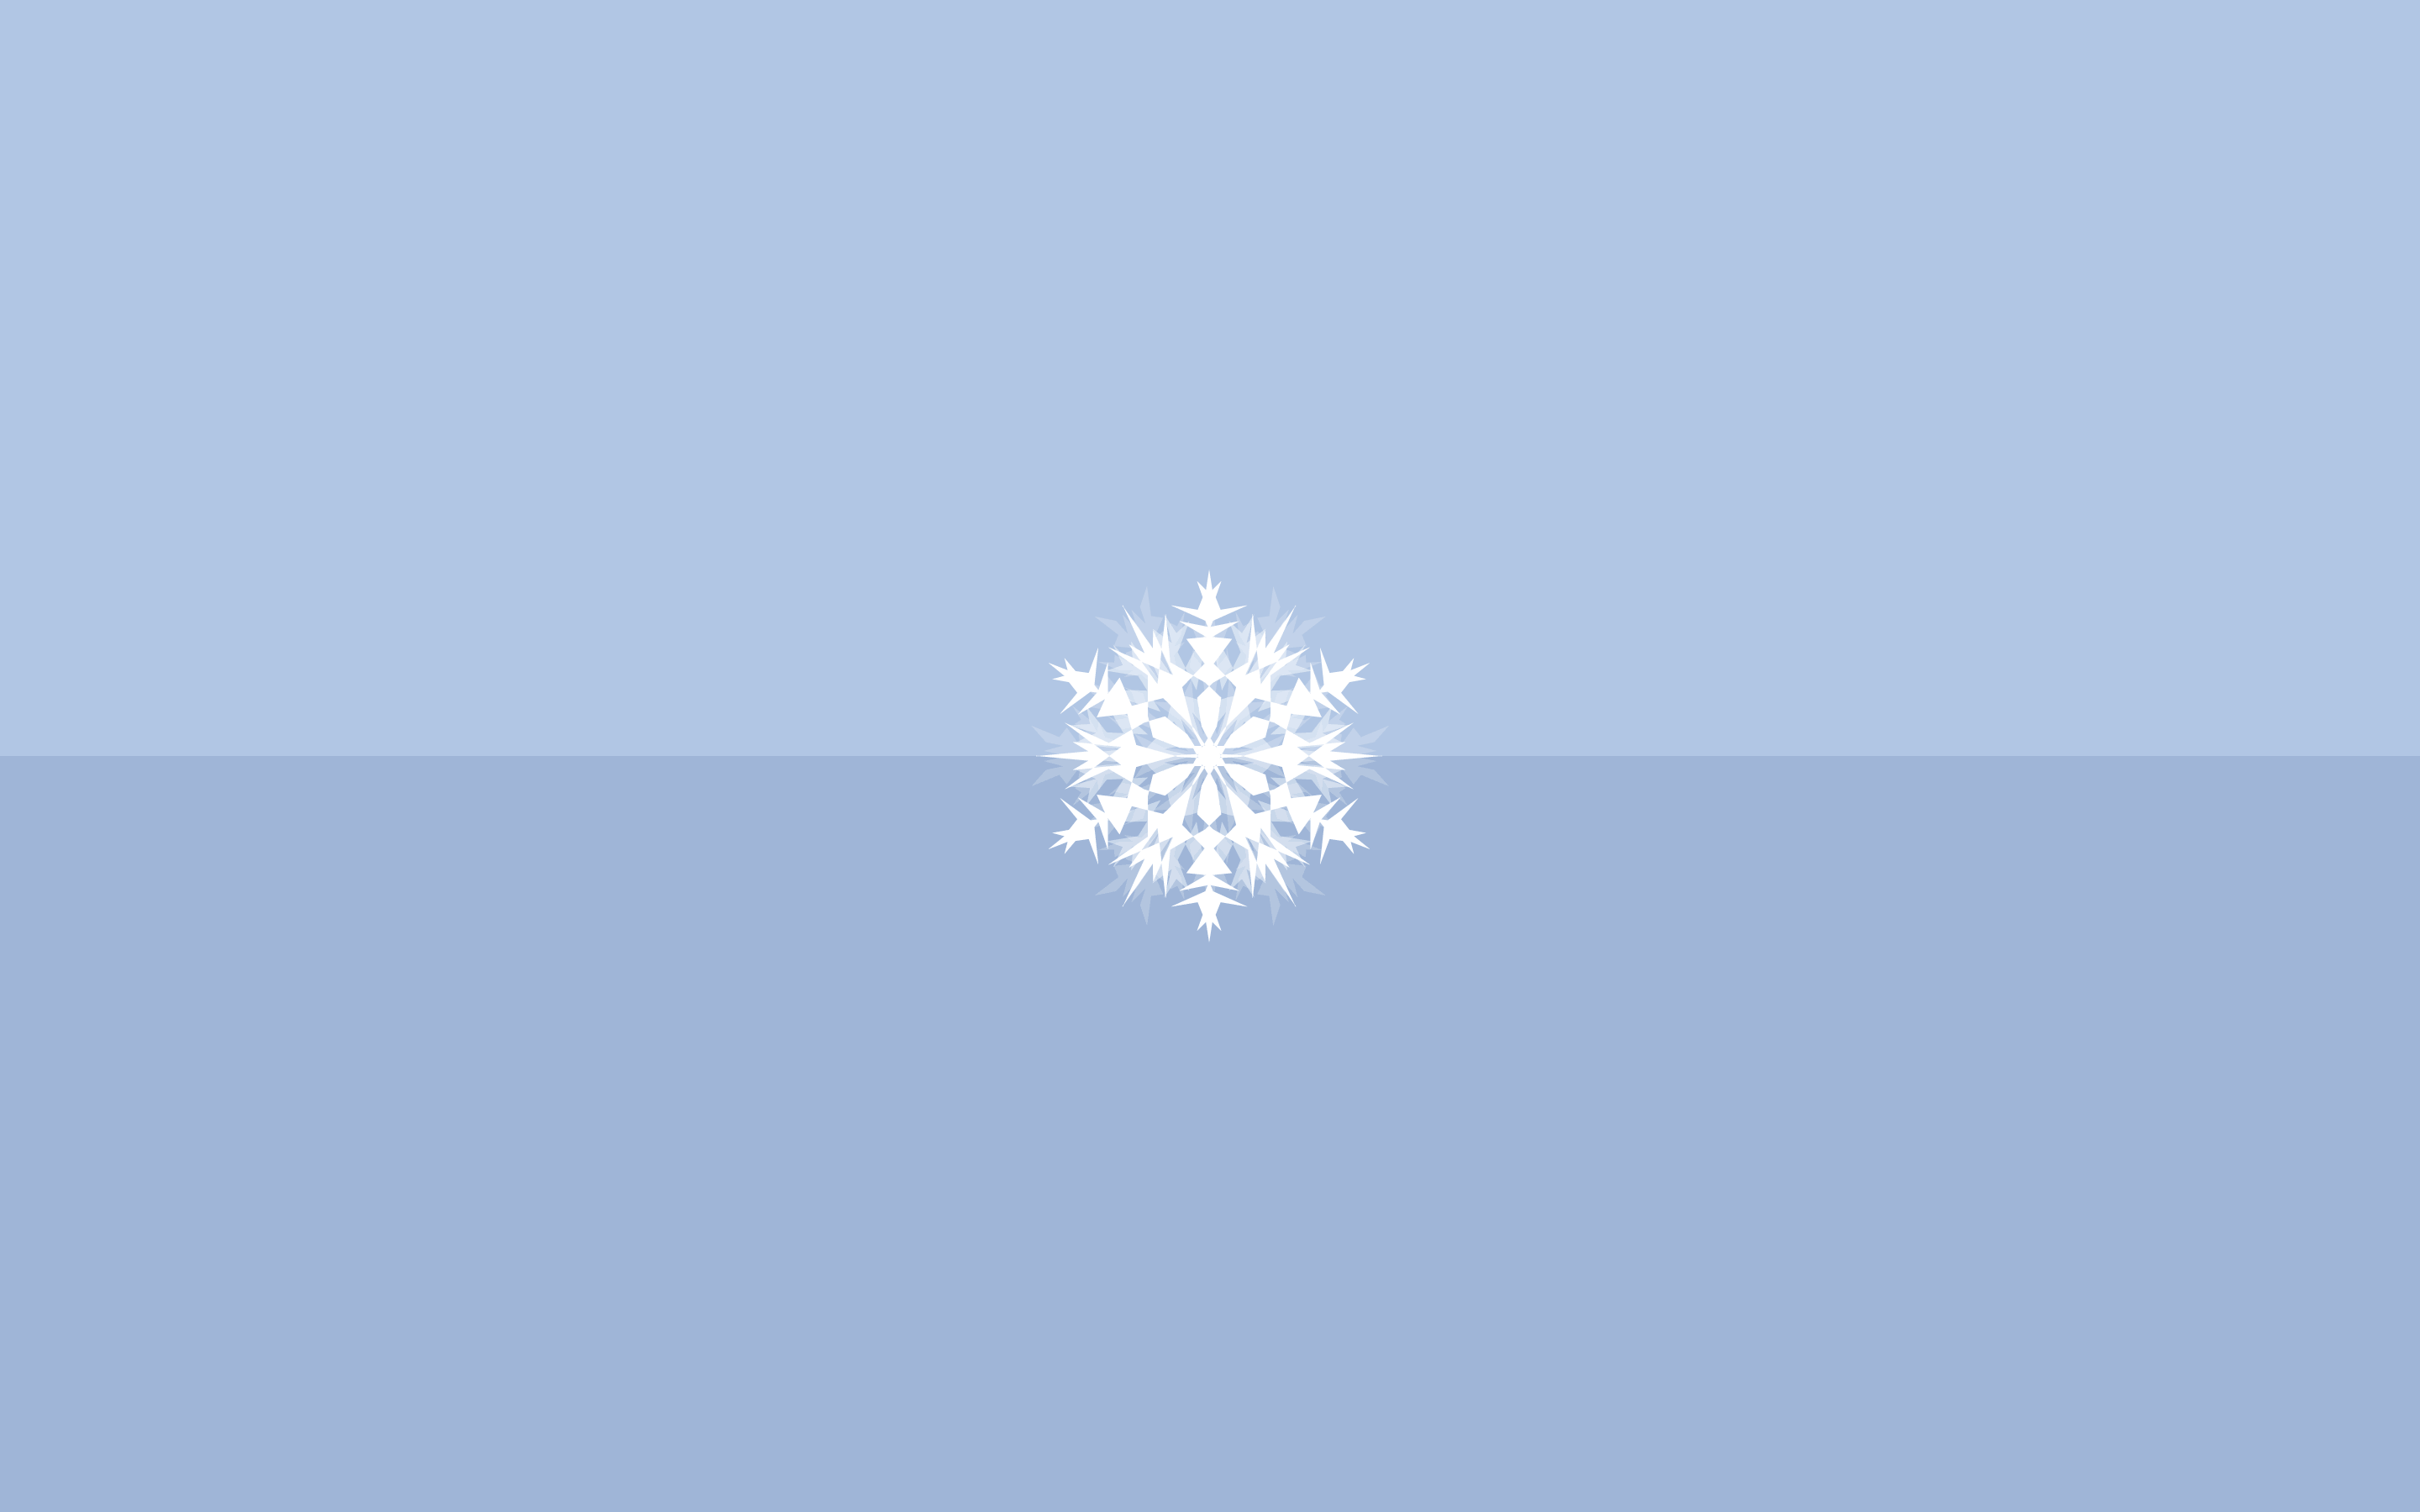 winter theme + snowflake. Winter wallpaper desktop, Minimalist wallpaper, Snowflake wallpaper